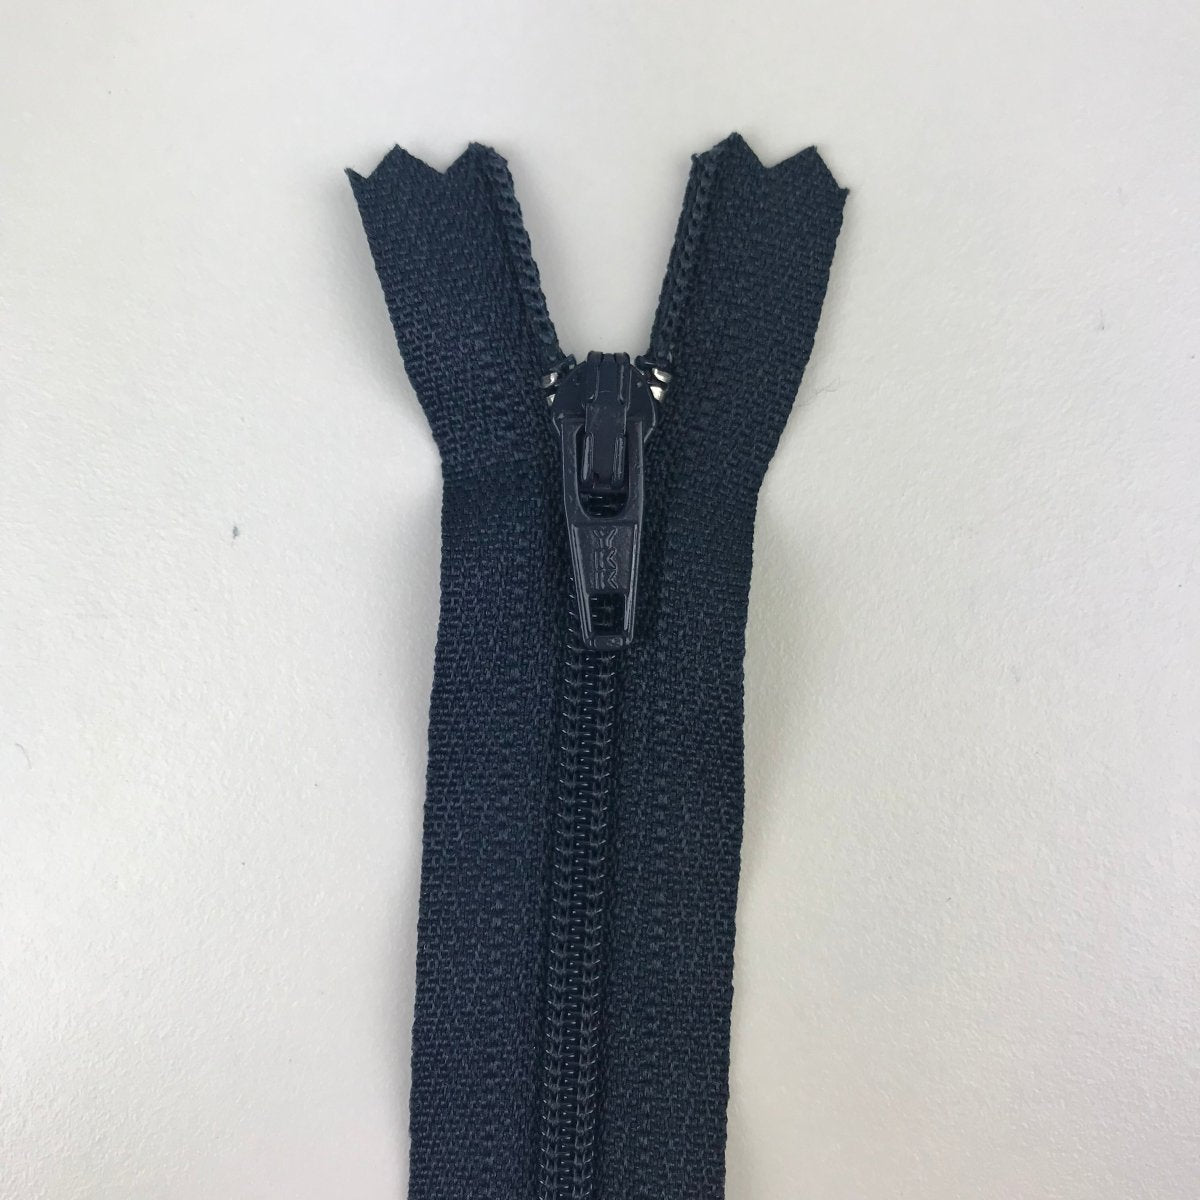 YKK Zipper - Skirt and Dress - 23cm (9") - Sewing Gem